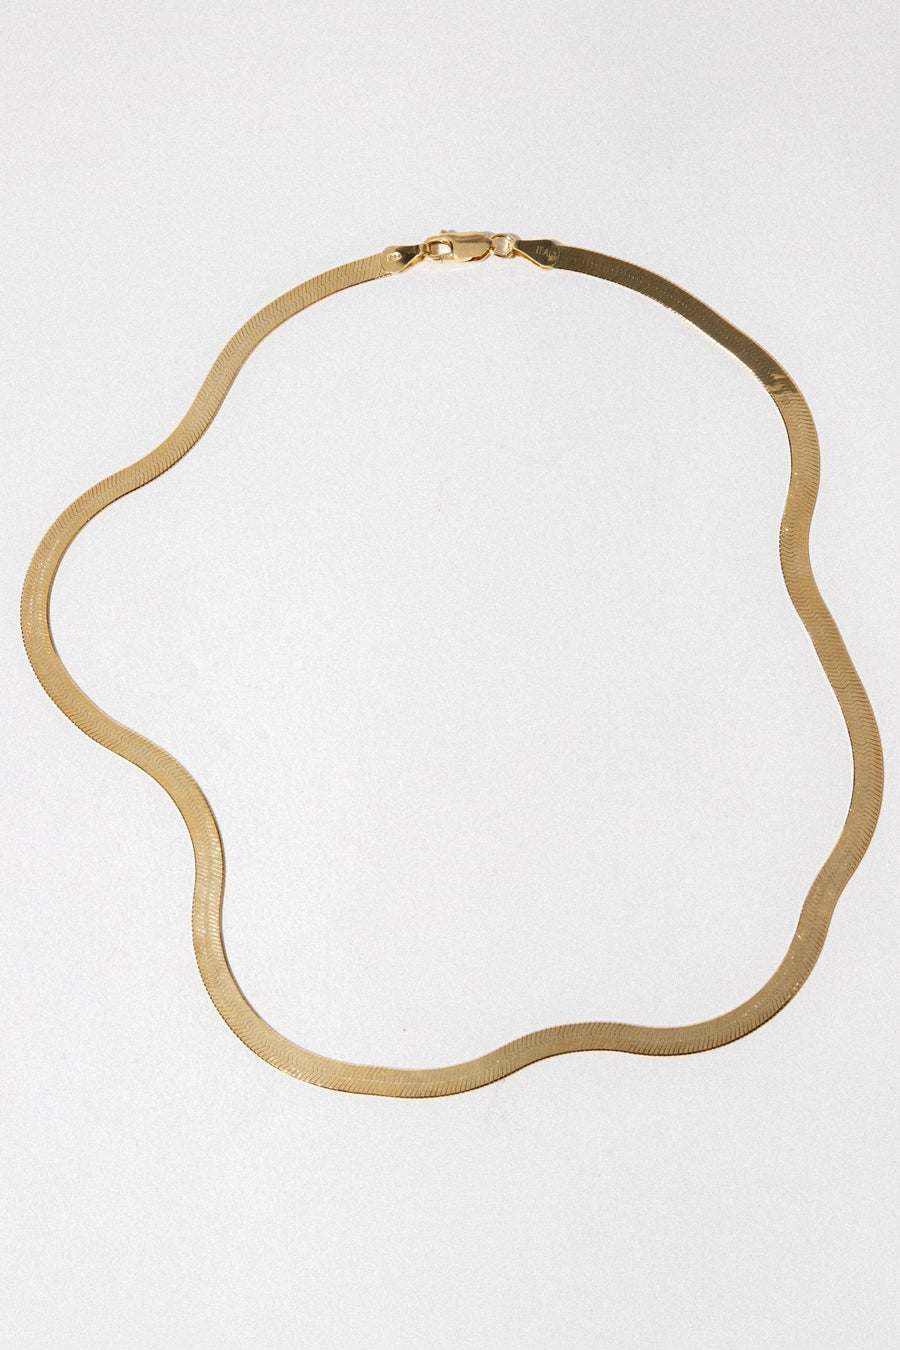 Tresor Jewelry Gold / 16 Inches Pathways Herringbone Necklace